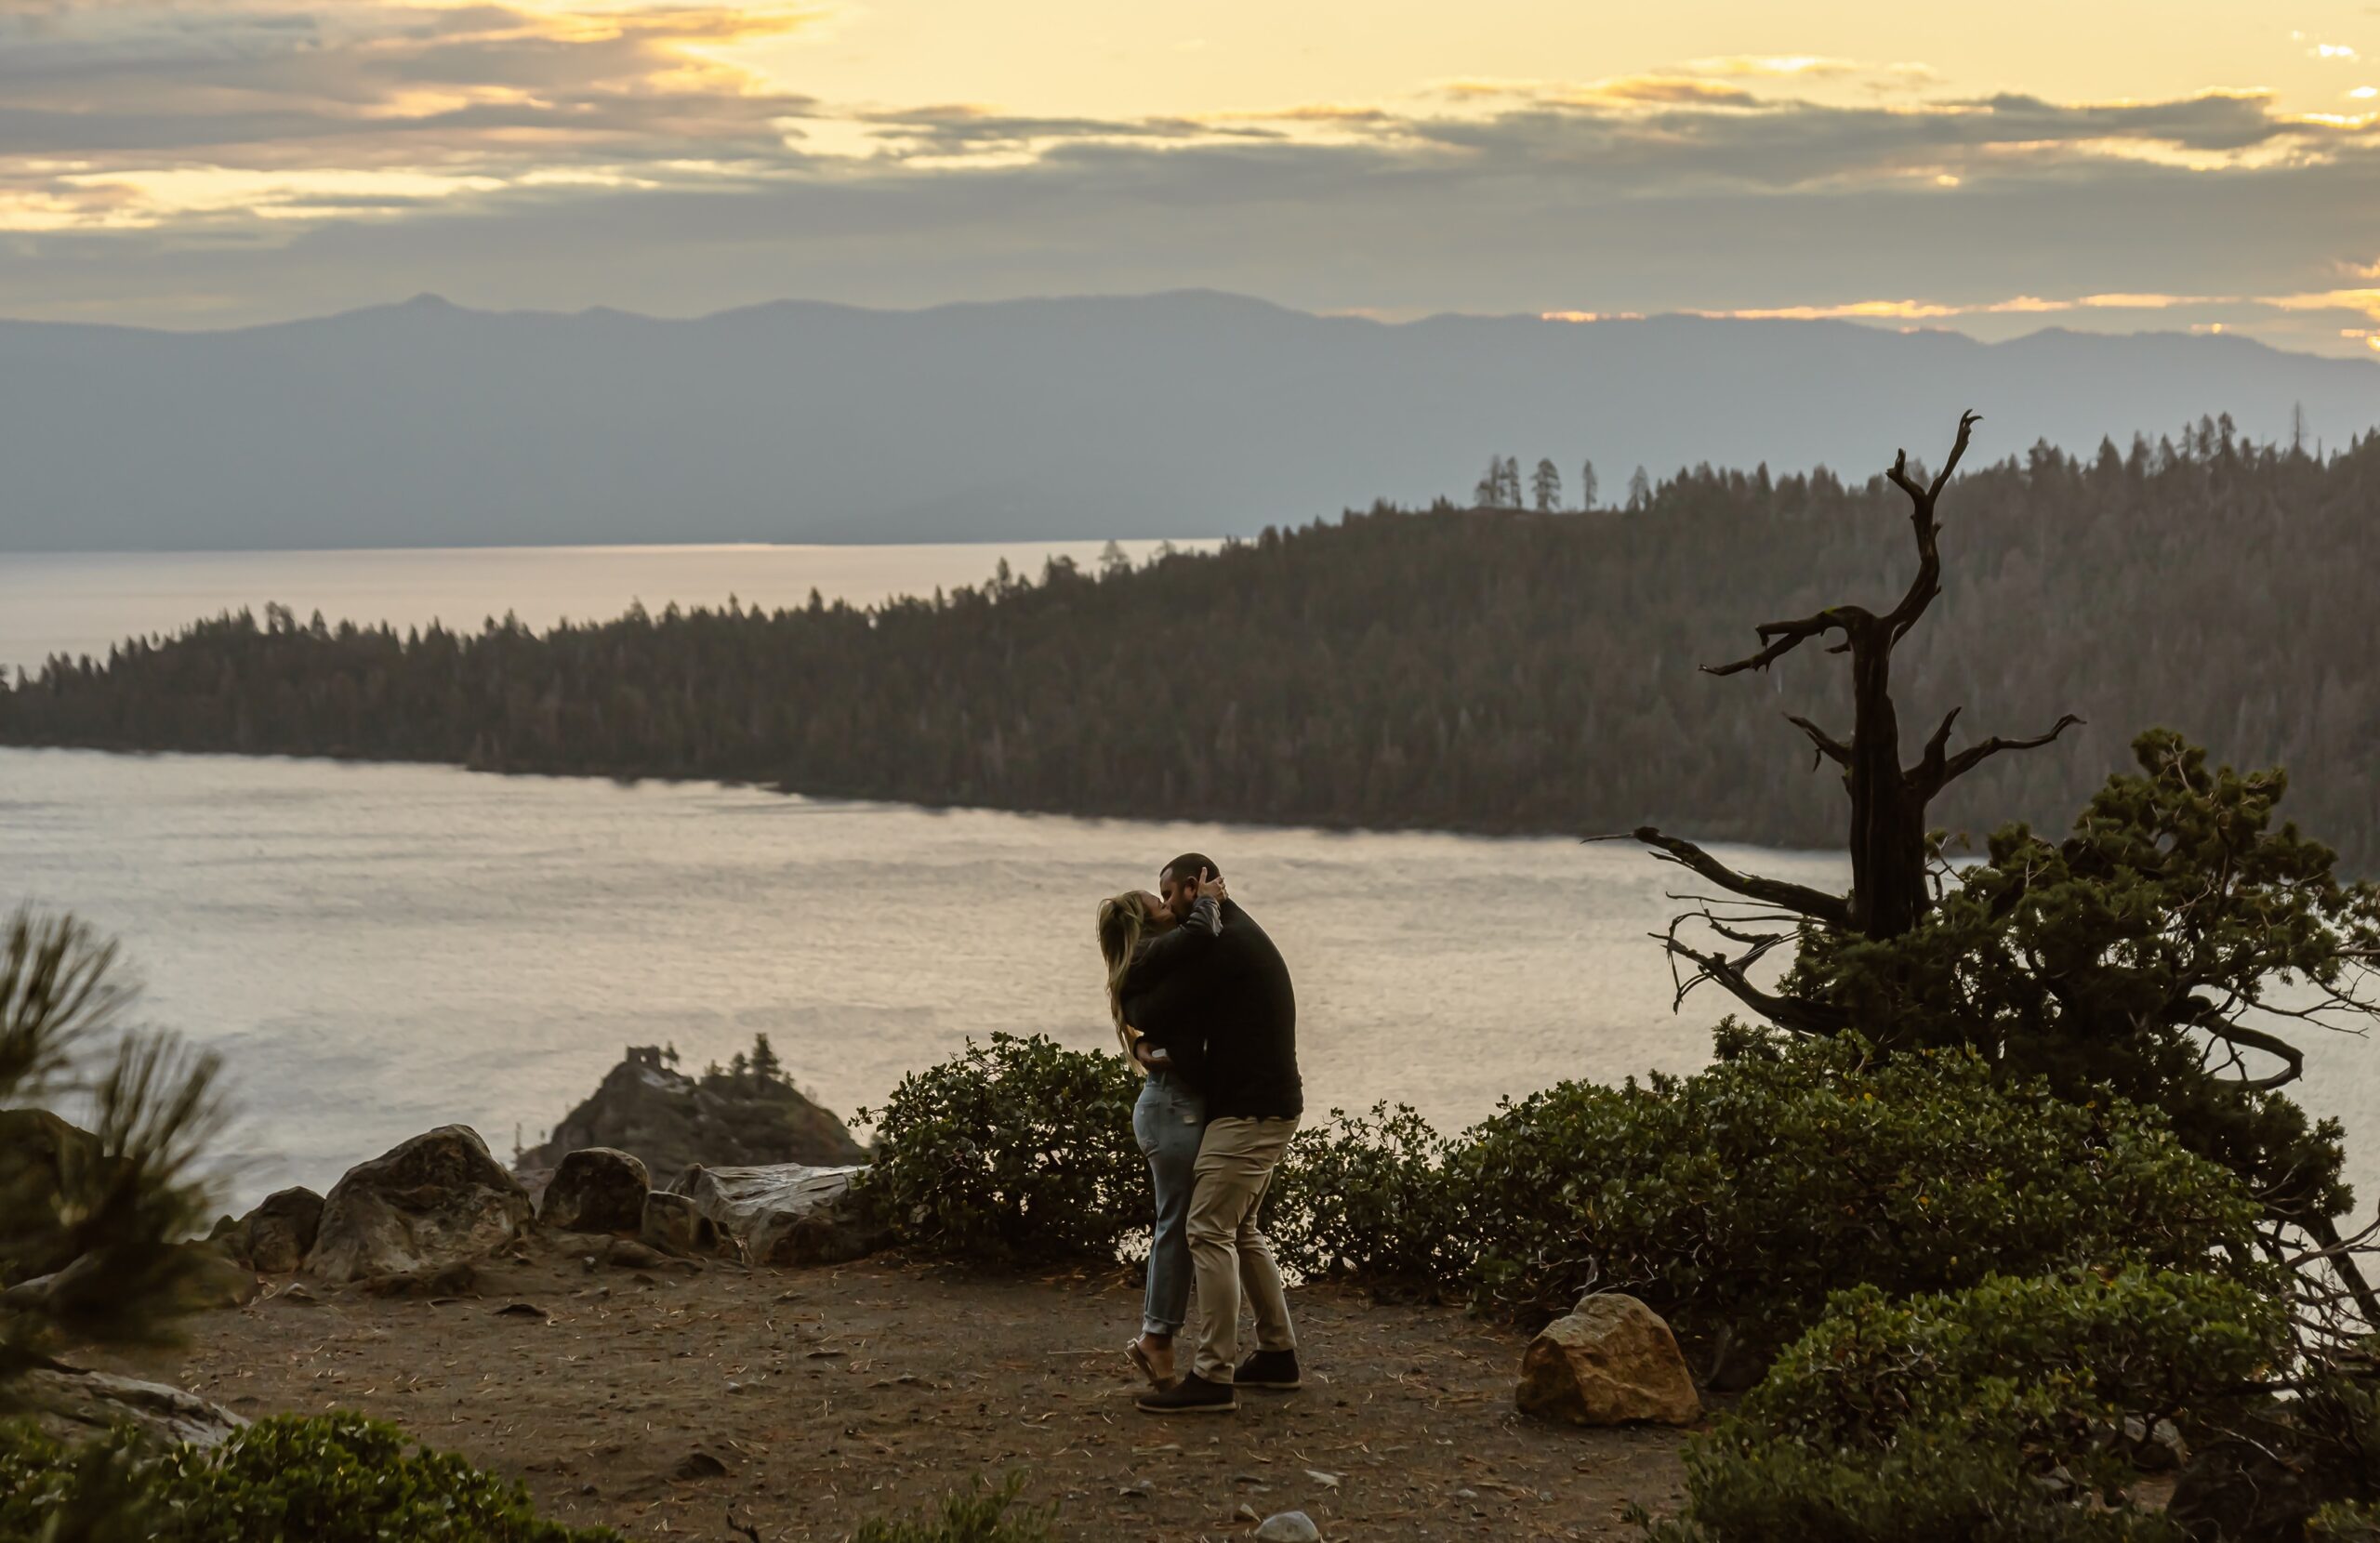 Sun rises during the Lake Tahoe proposal